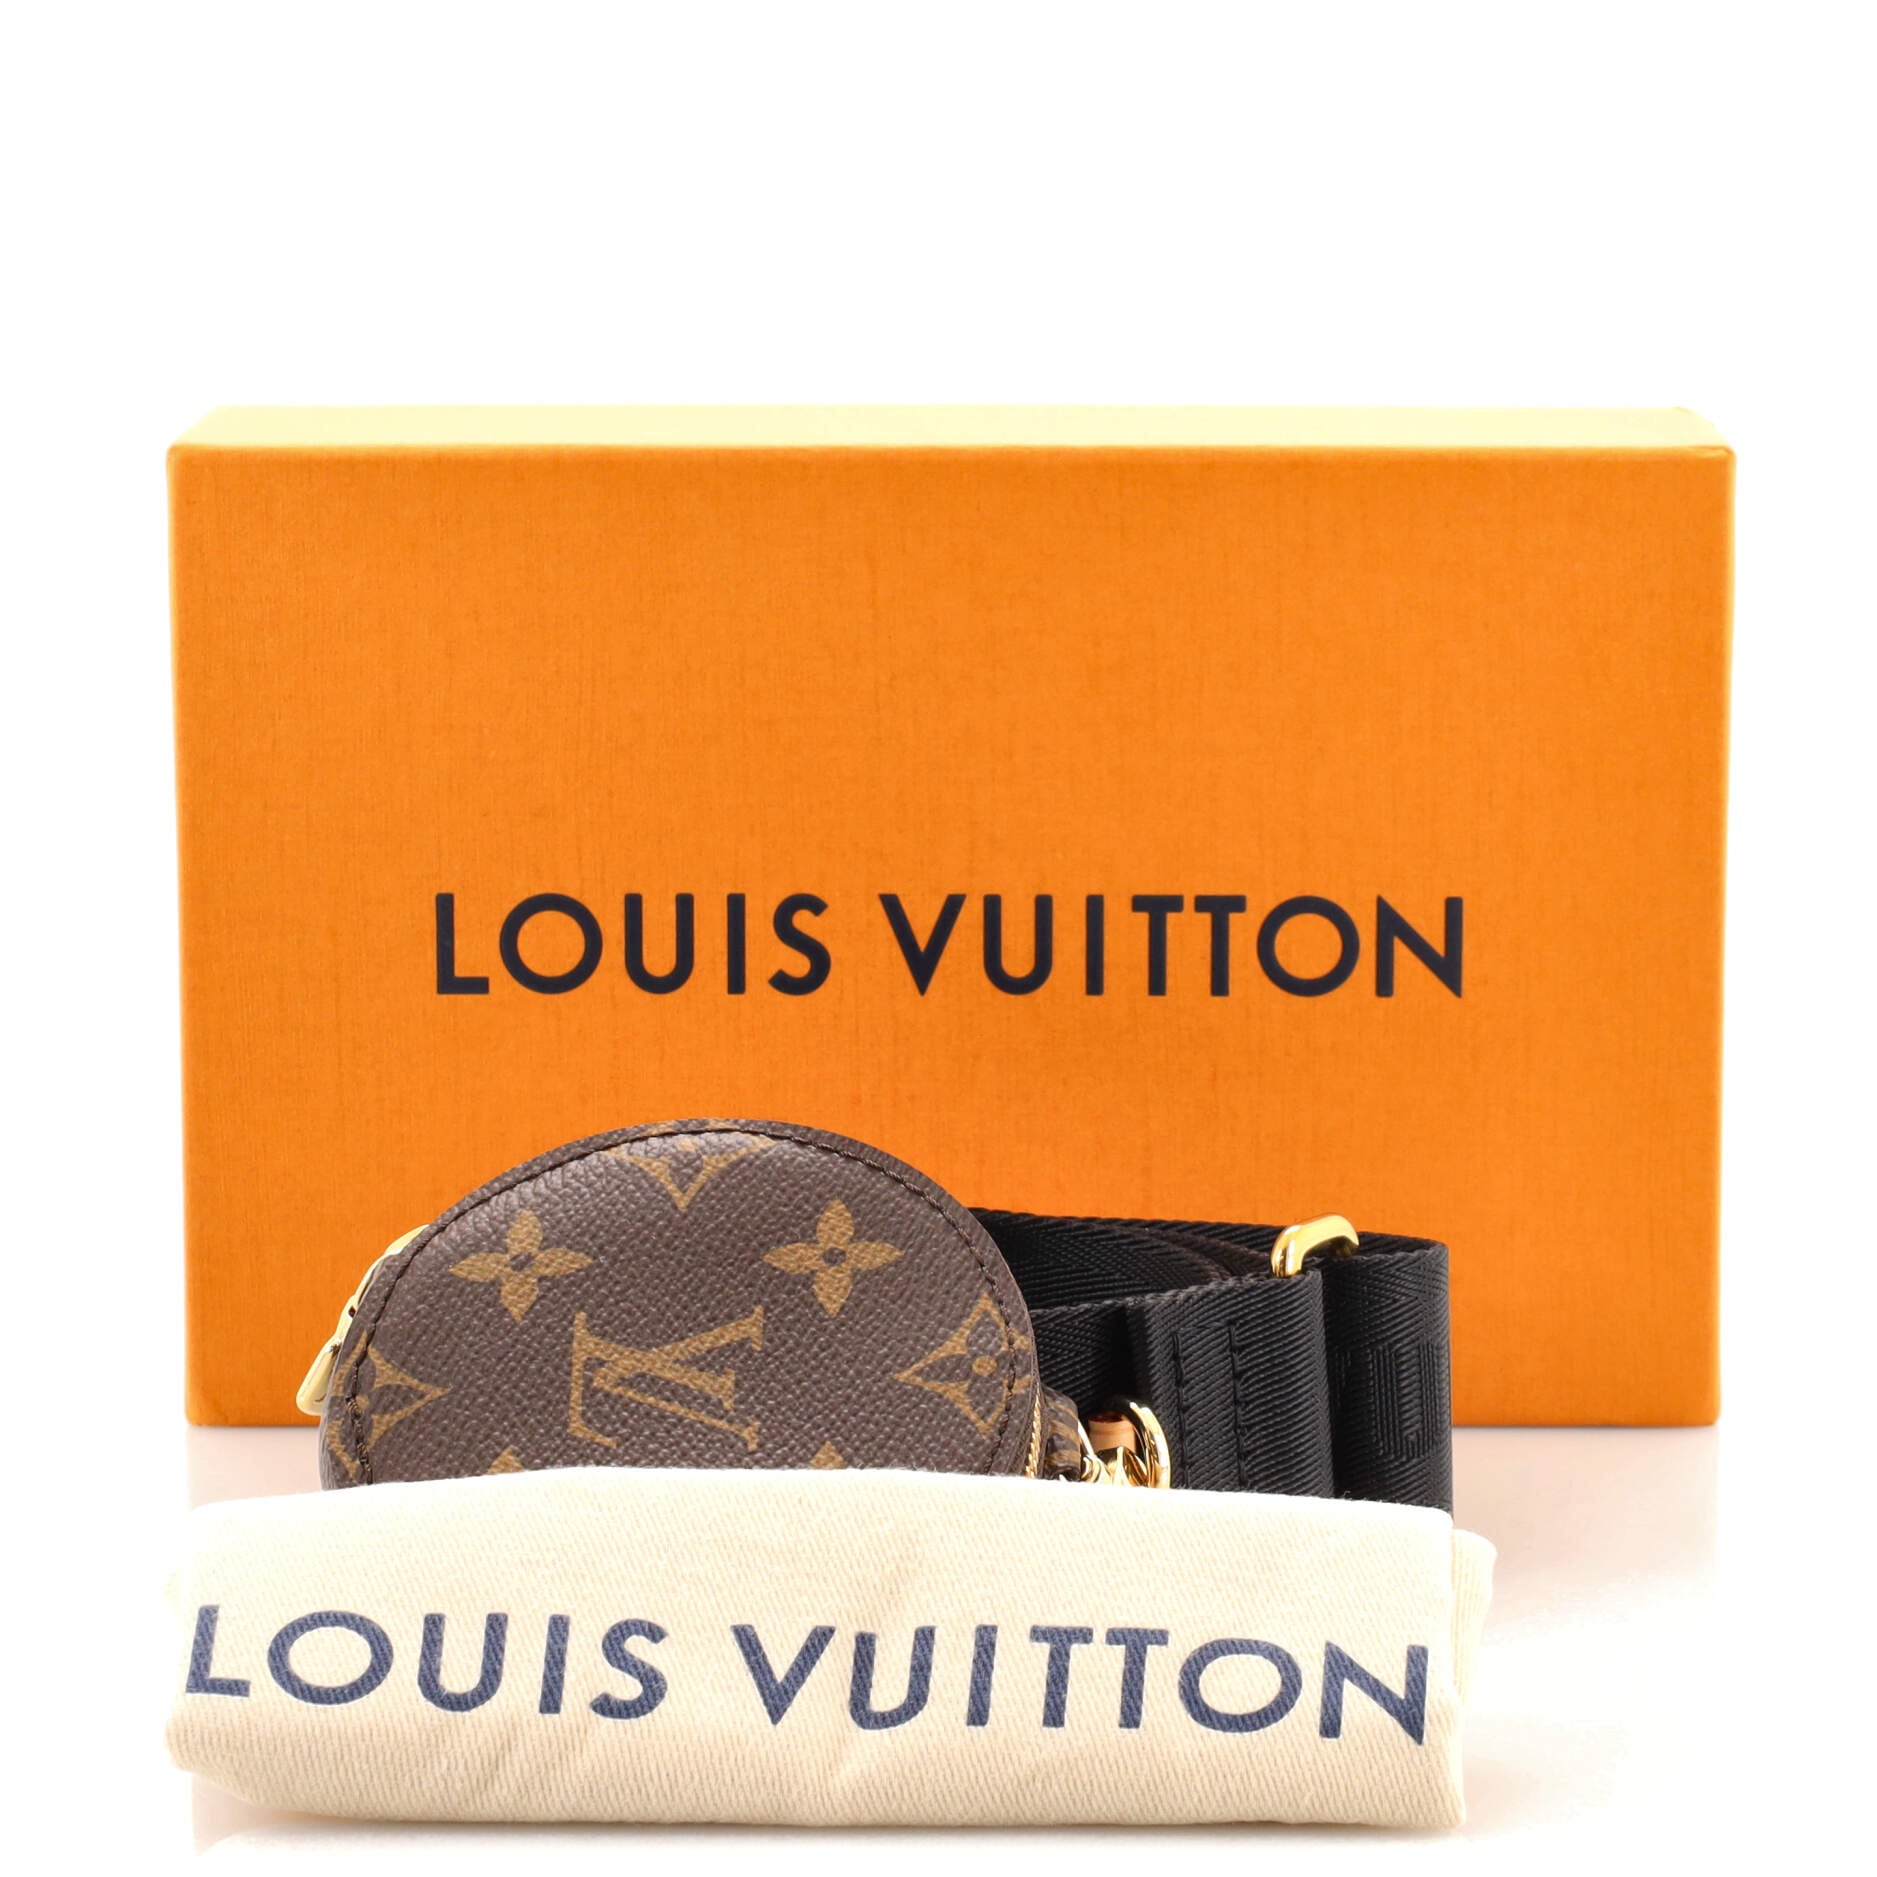 Slanted Signature Vase T-Shirt, - Louis Vuitton